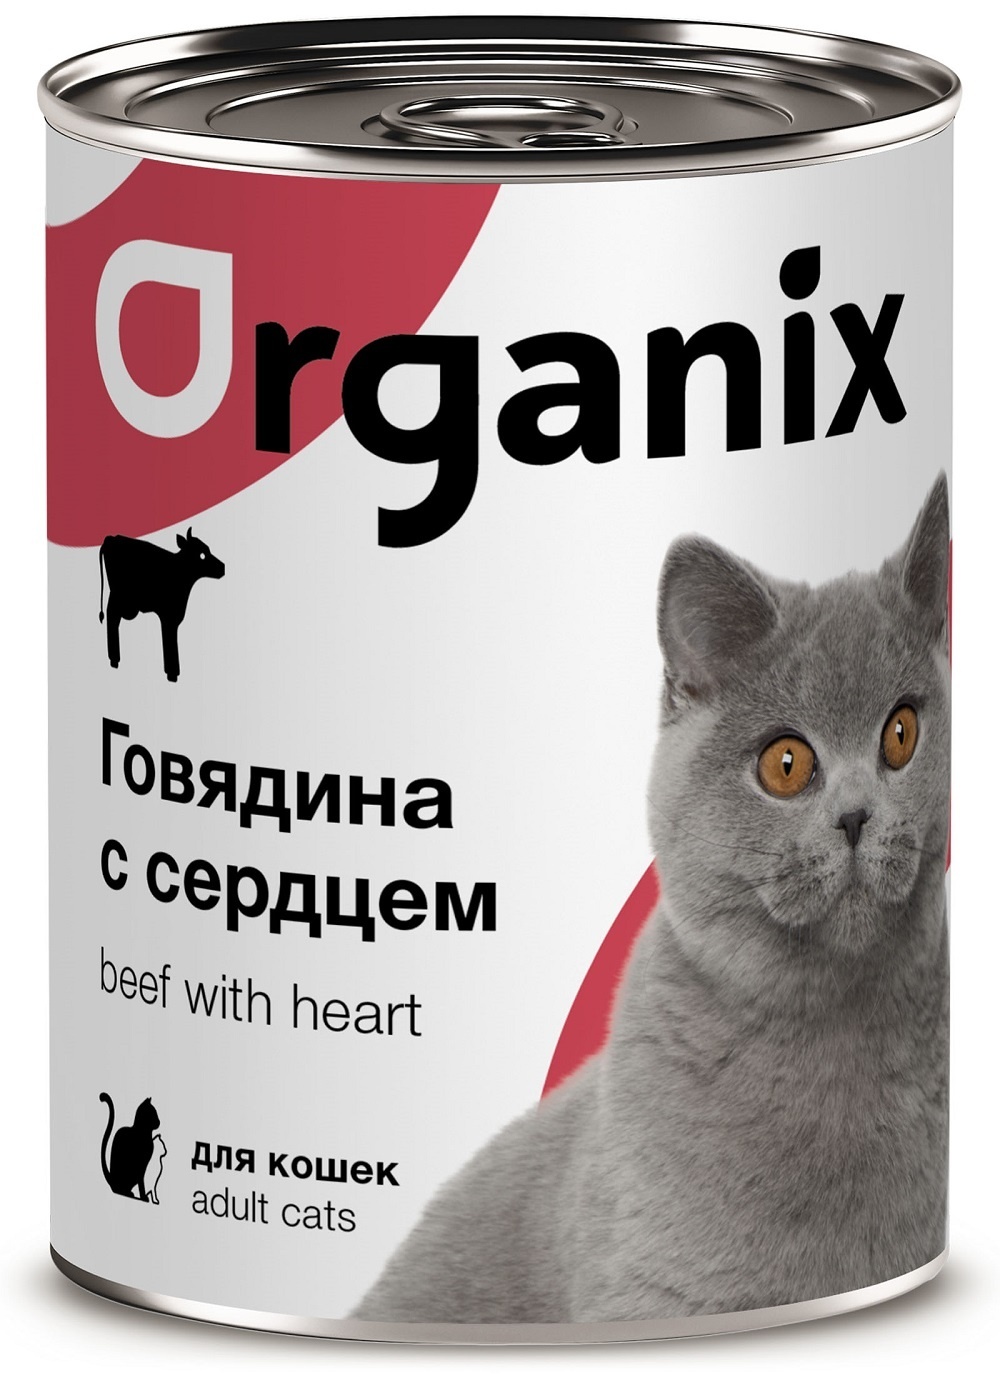 Organix консервы Organix консервы с говядиной и сердцем для кошек (410 г) organix консервы organix консервы с ягненком для взрослых собак банка 410 г